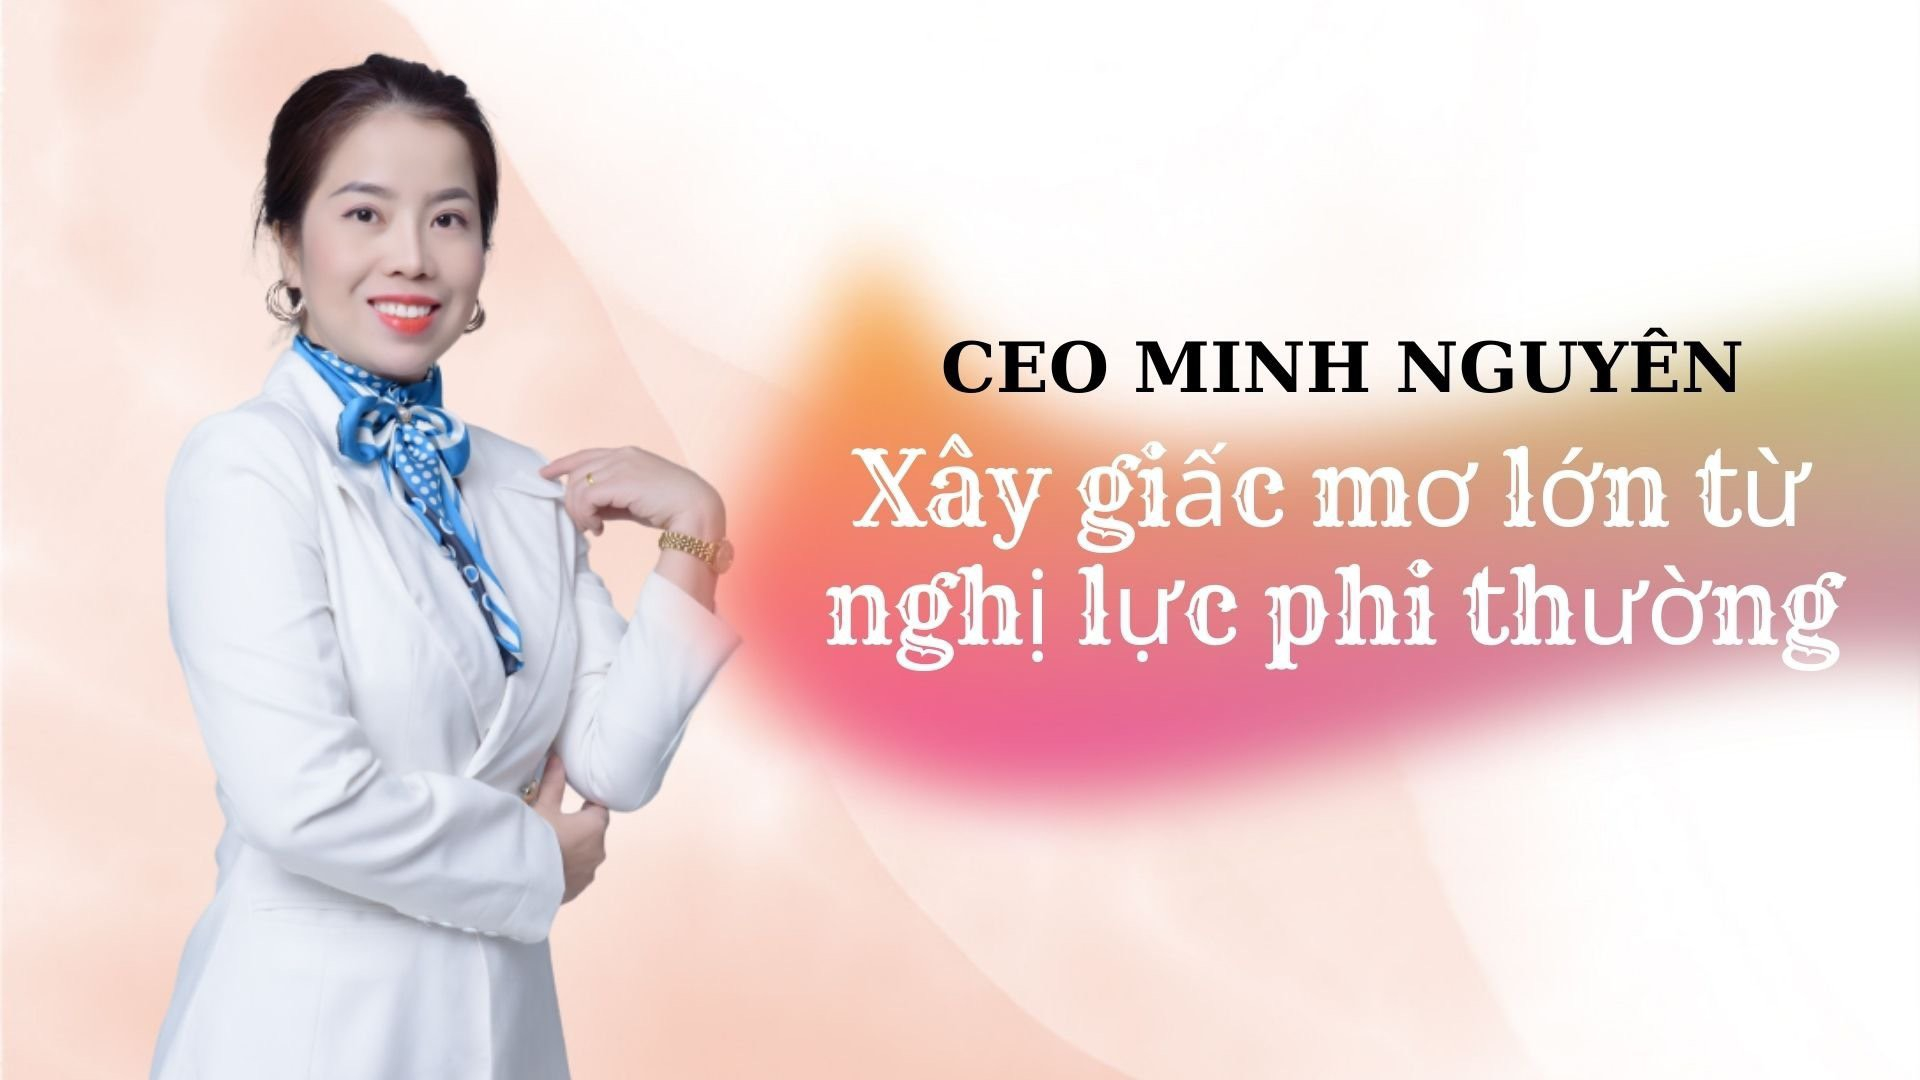 CEO MINH NGUYÊN - Giám đốc công ty Thảo Dược Minh Nguyên